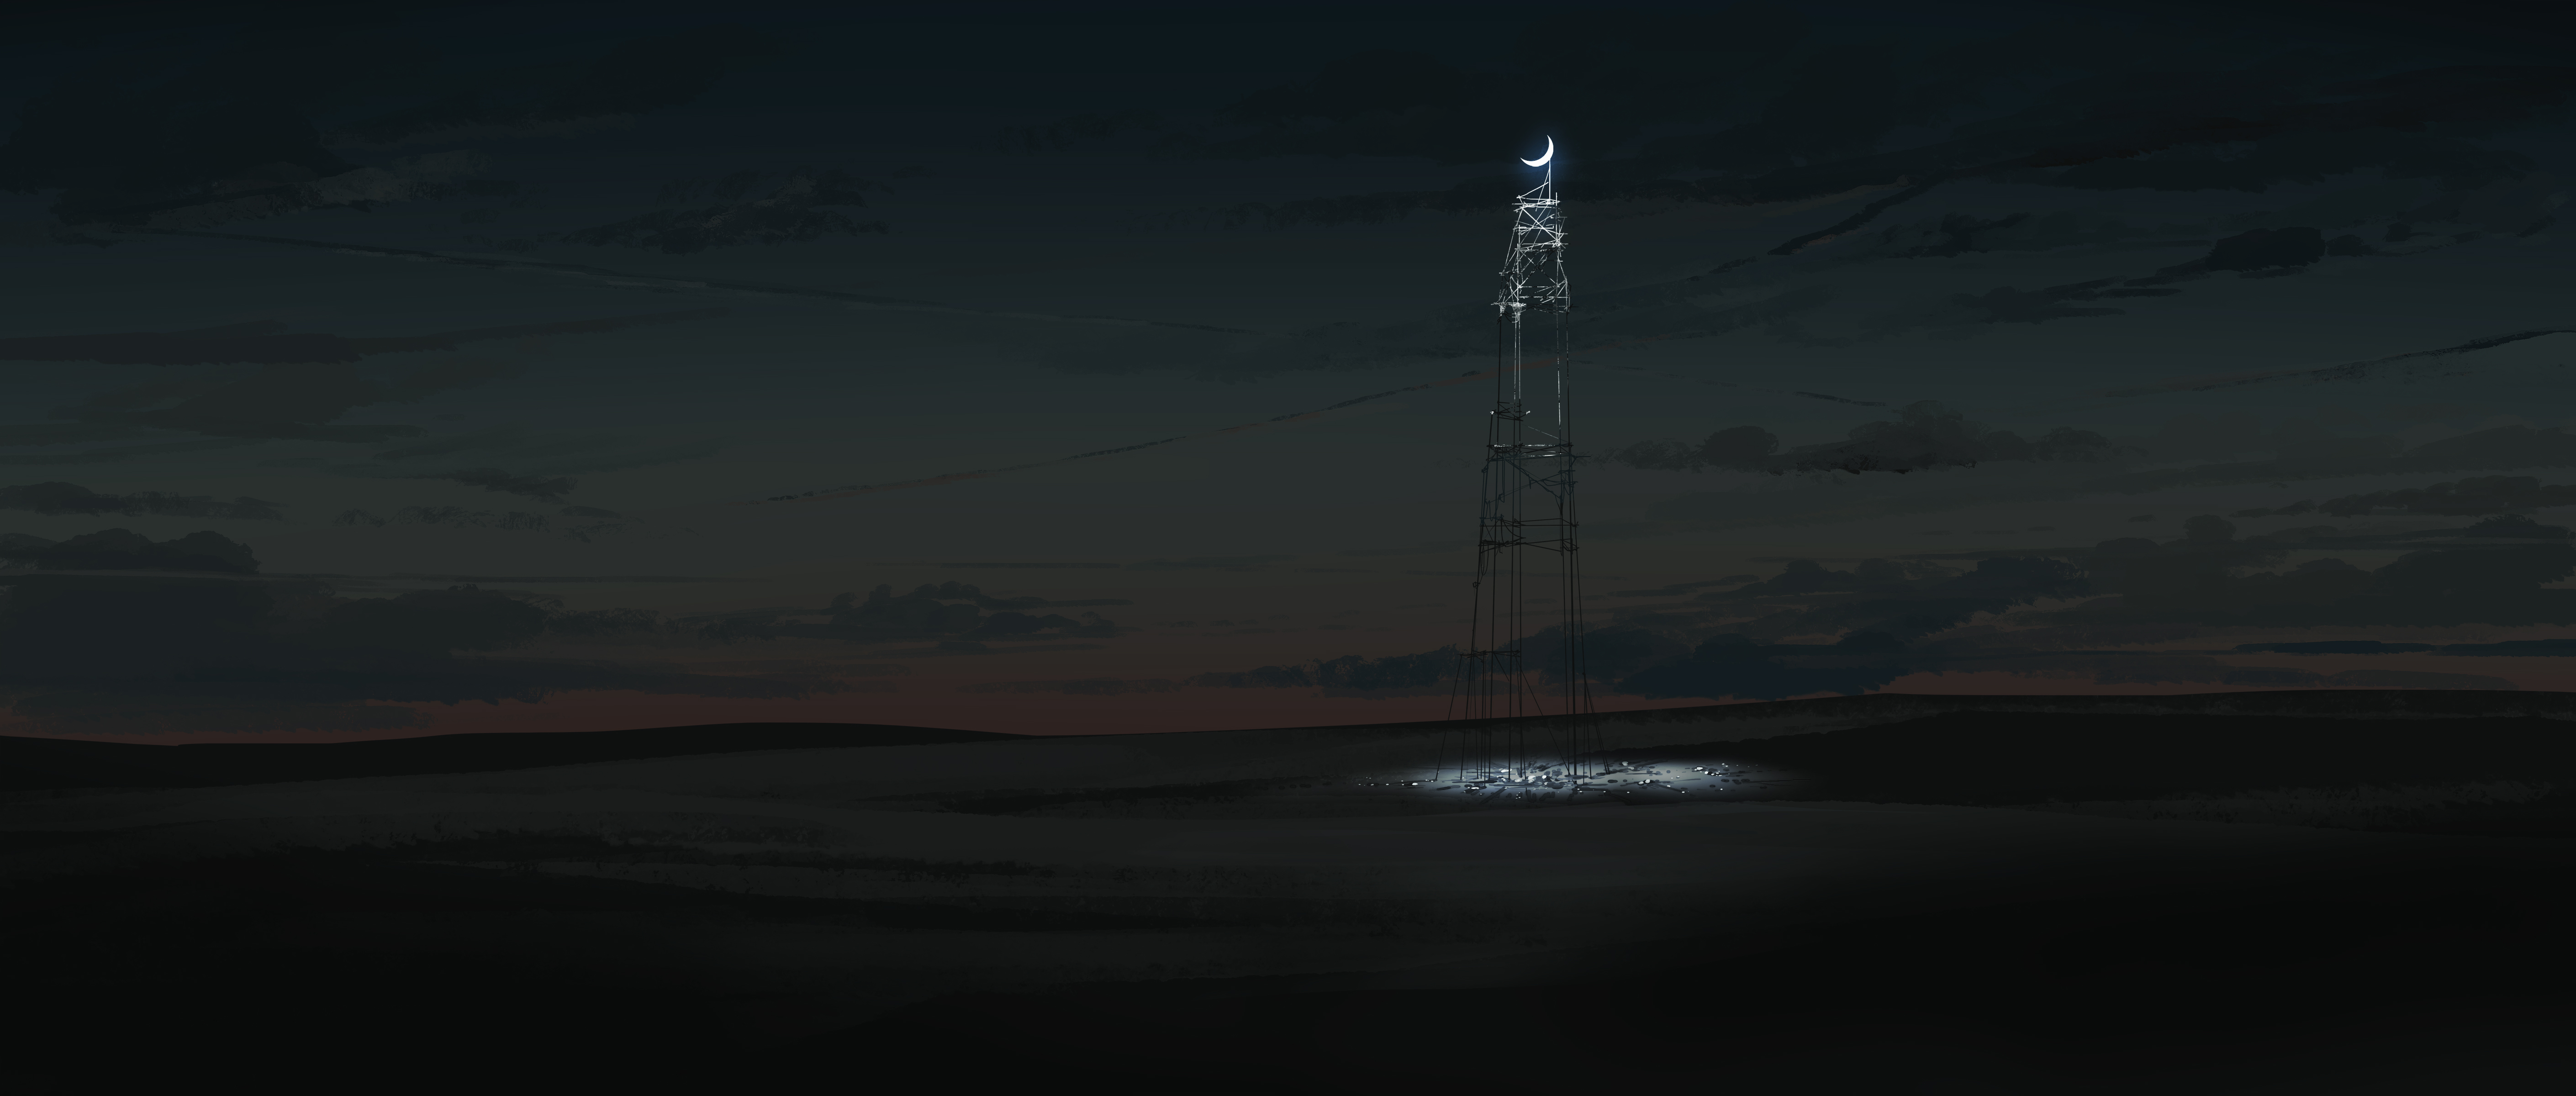 Gracile Digital Art Artwork Illustration Ultrawide Wide Screen Night Nightscape Moon Clouds Field En 5640x2400